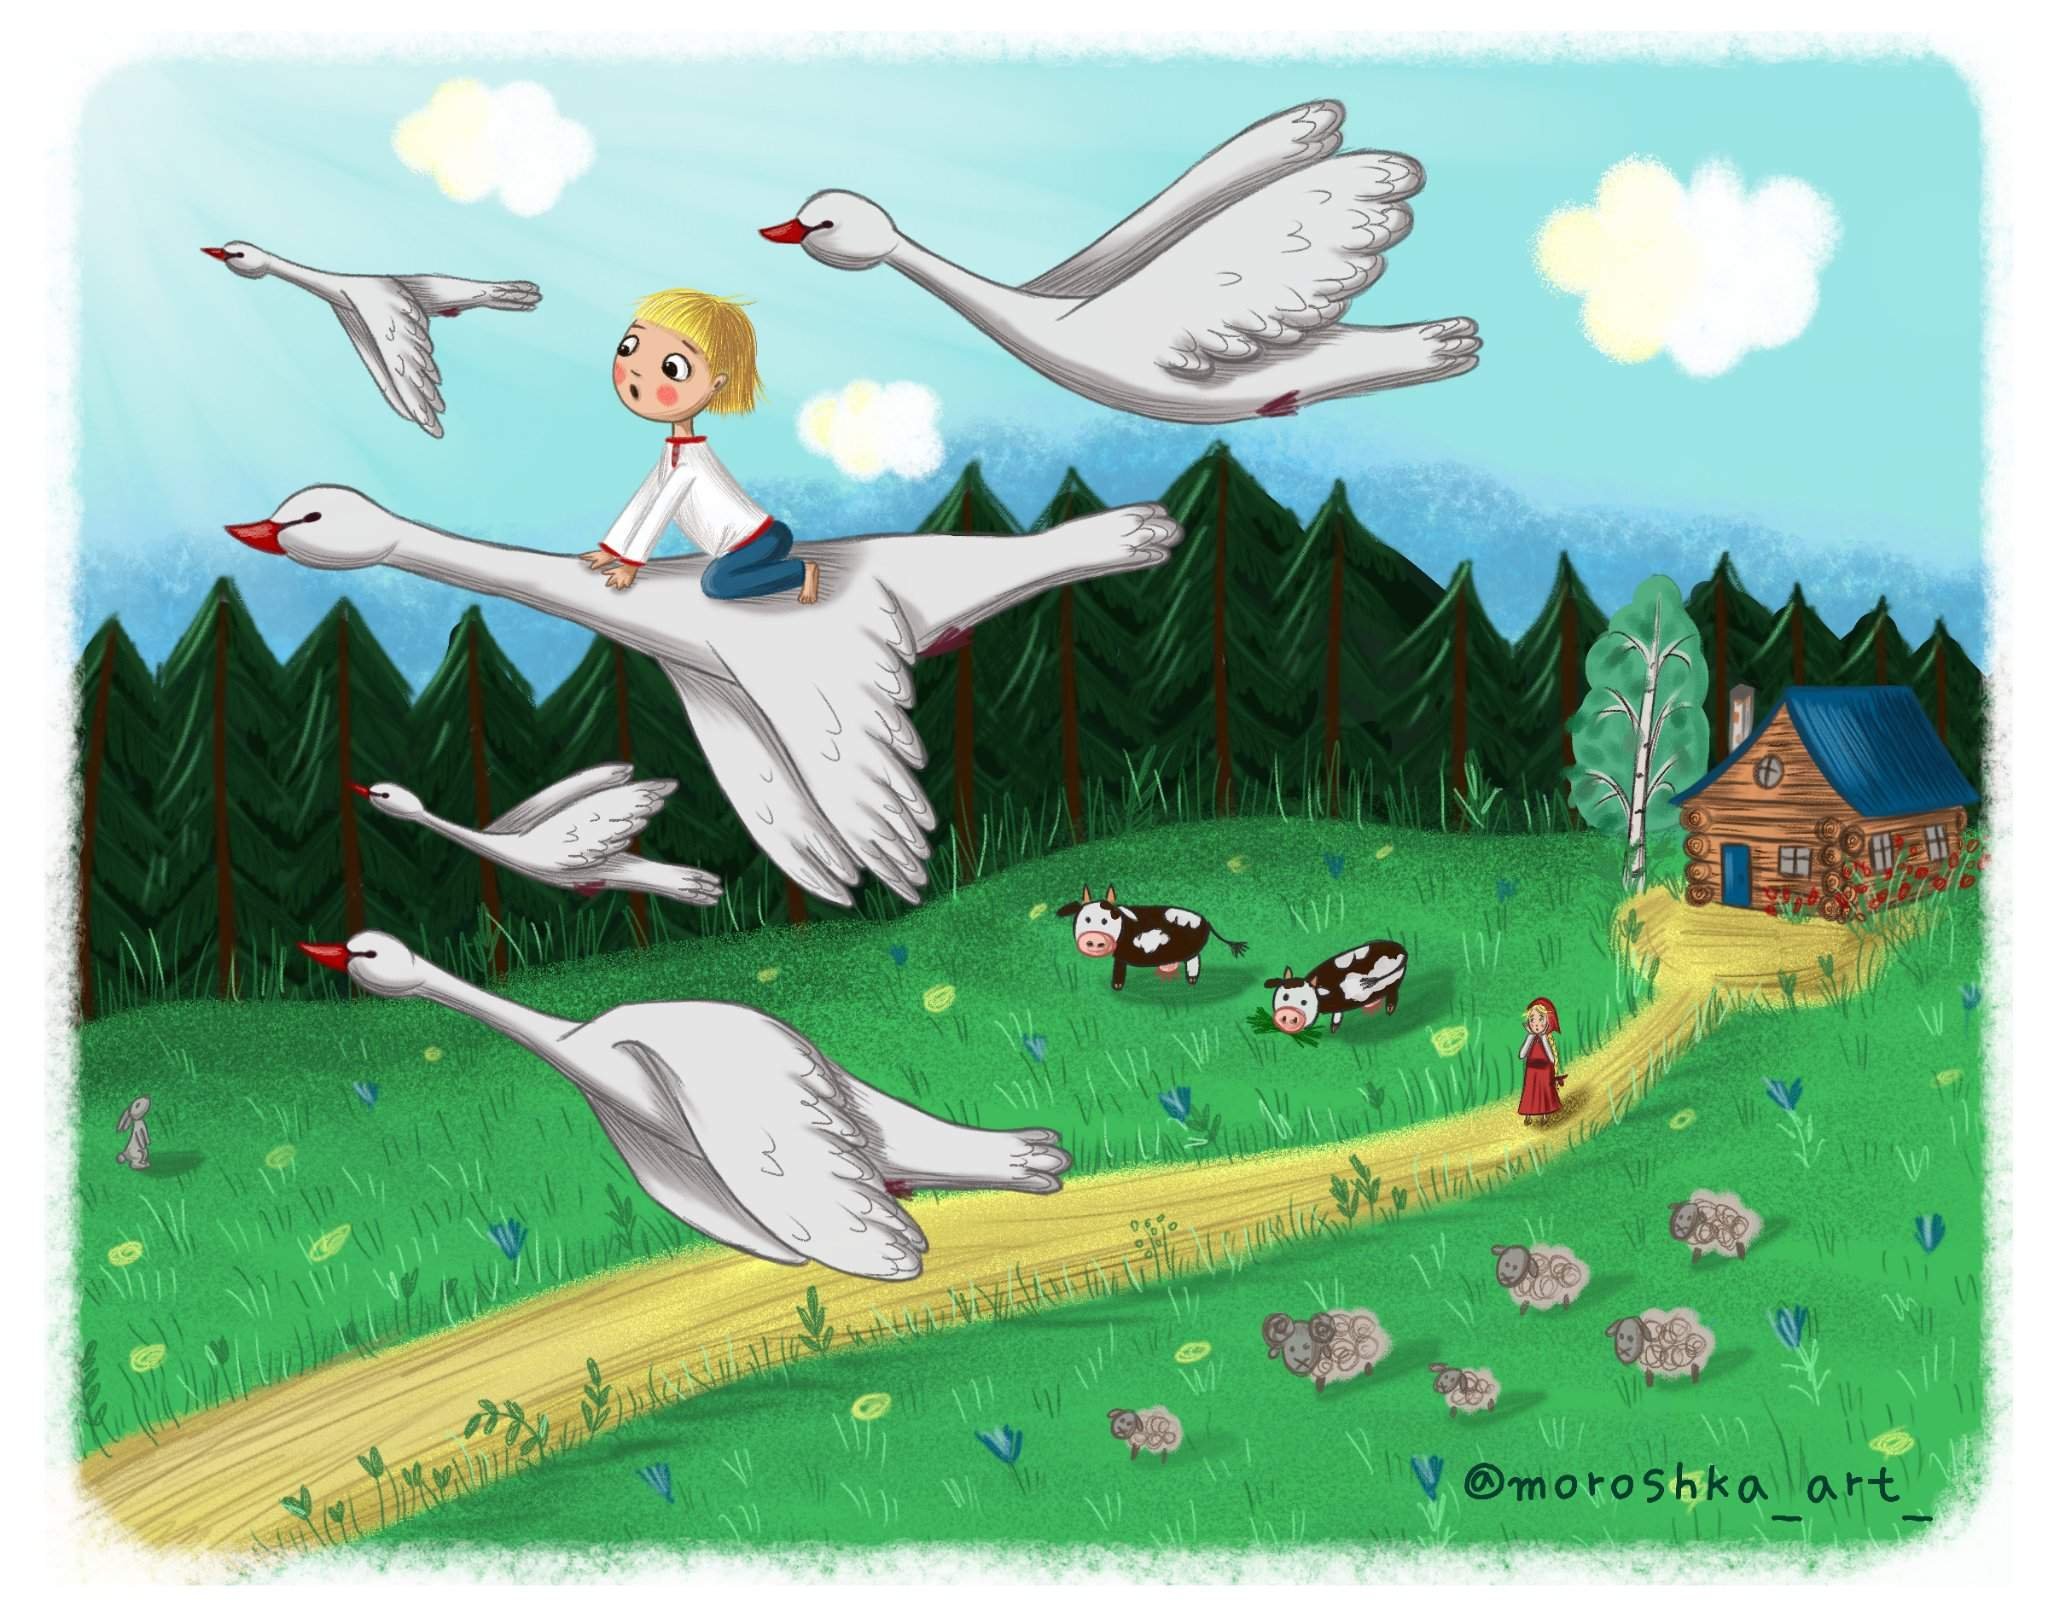 Читать сказку гуси лебеди русская народная. Иллюстрация к сказке гуси лебеди. Иллюстрация к сказке гуси лебеди для детей. Сказка гуси лебеди Иванушка. Сказка гуси лебеди для детей.